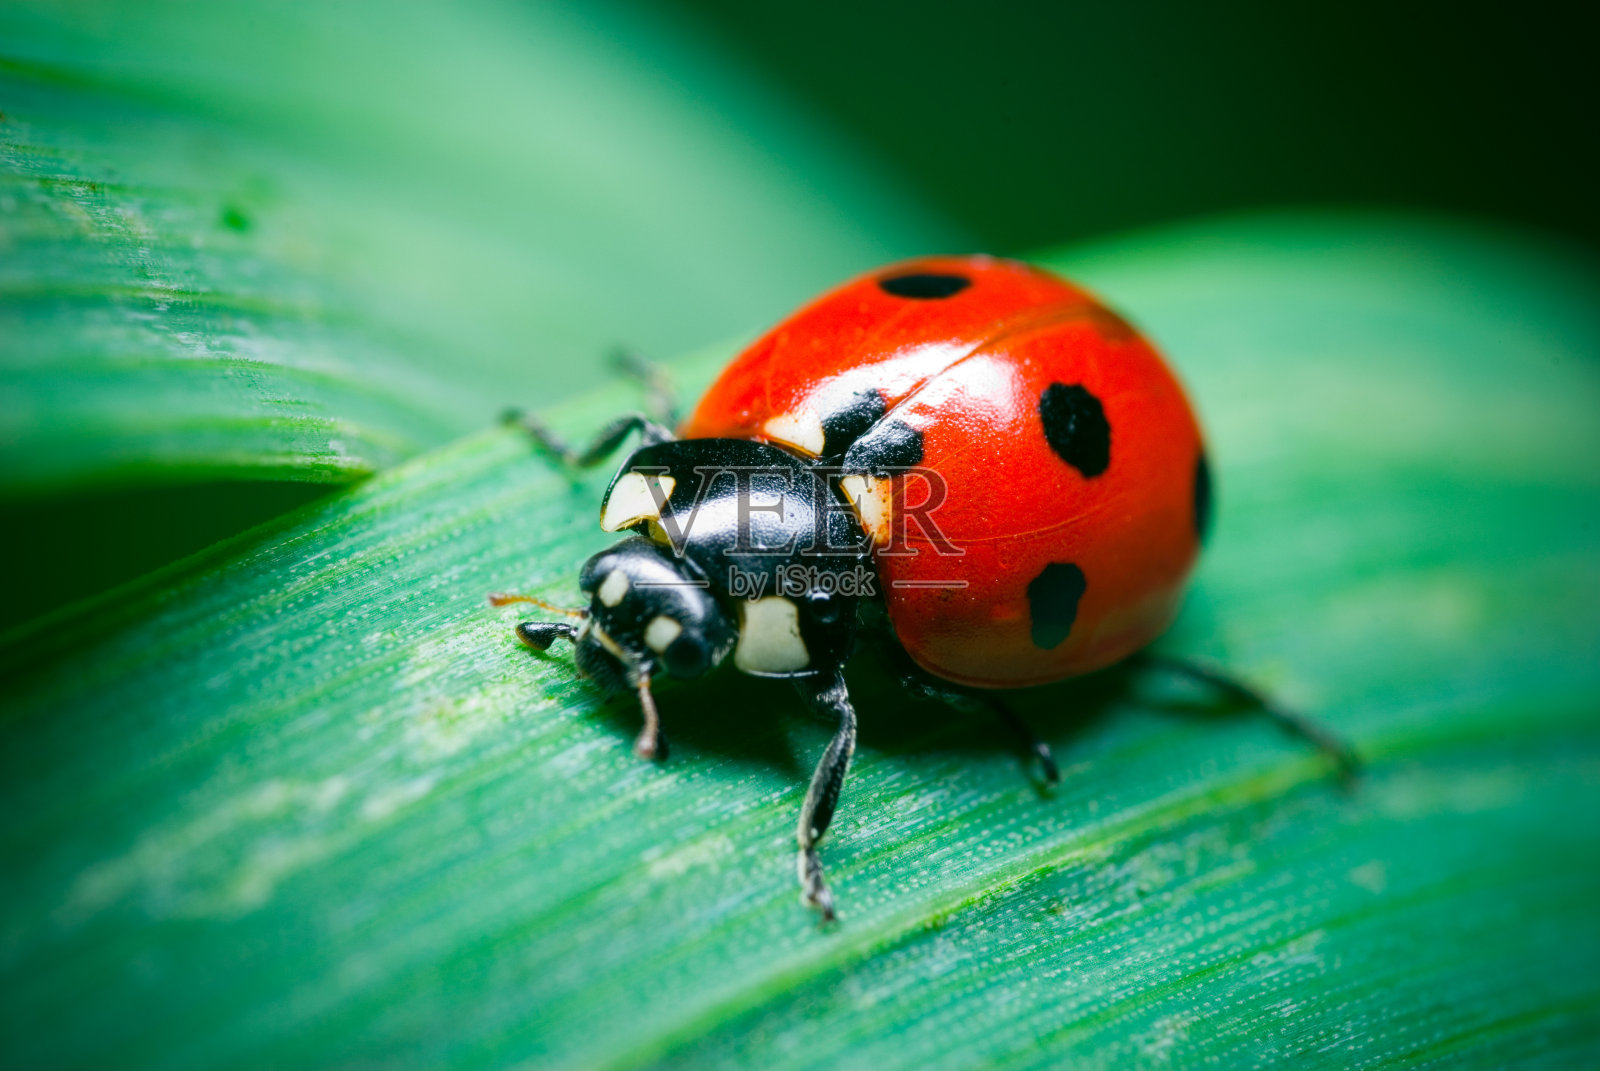 一个在草地上的瓢虫的特写照片摄影图片